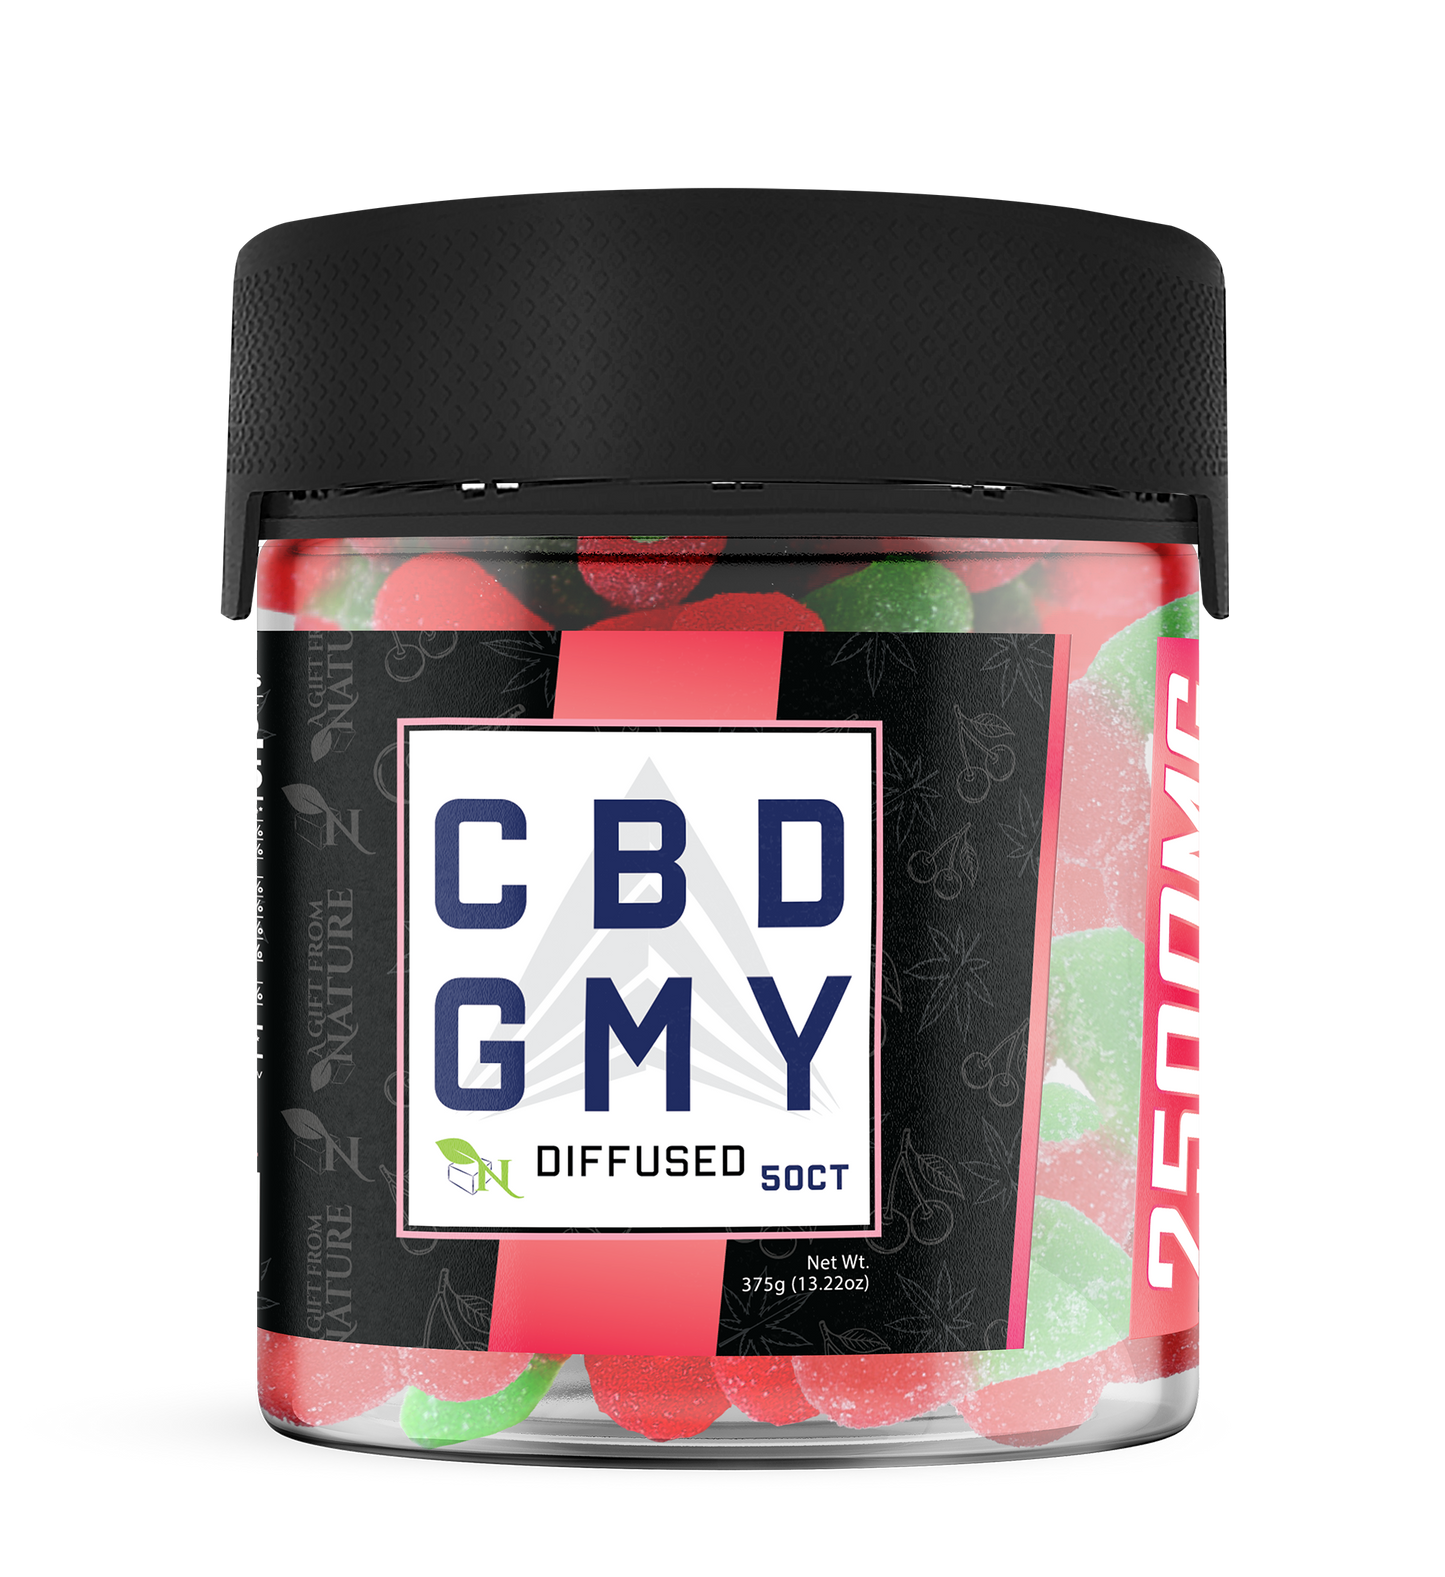 AGFN CBD GMY Diffused CBD Gummies I 2500MG/50ct/Jar